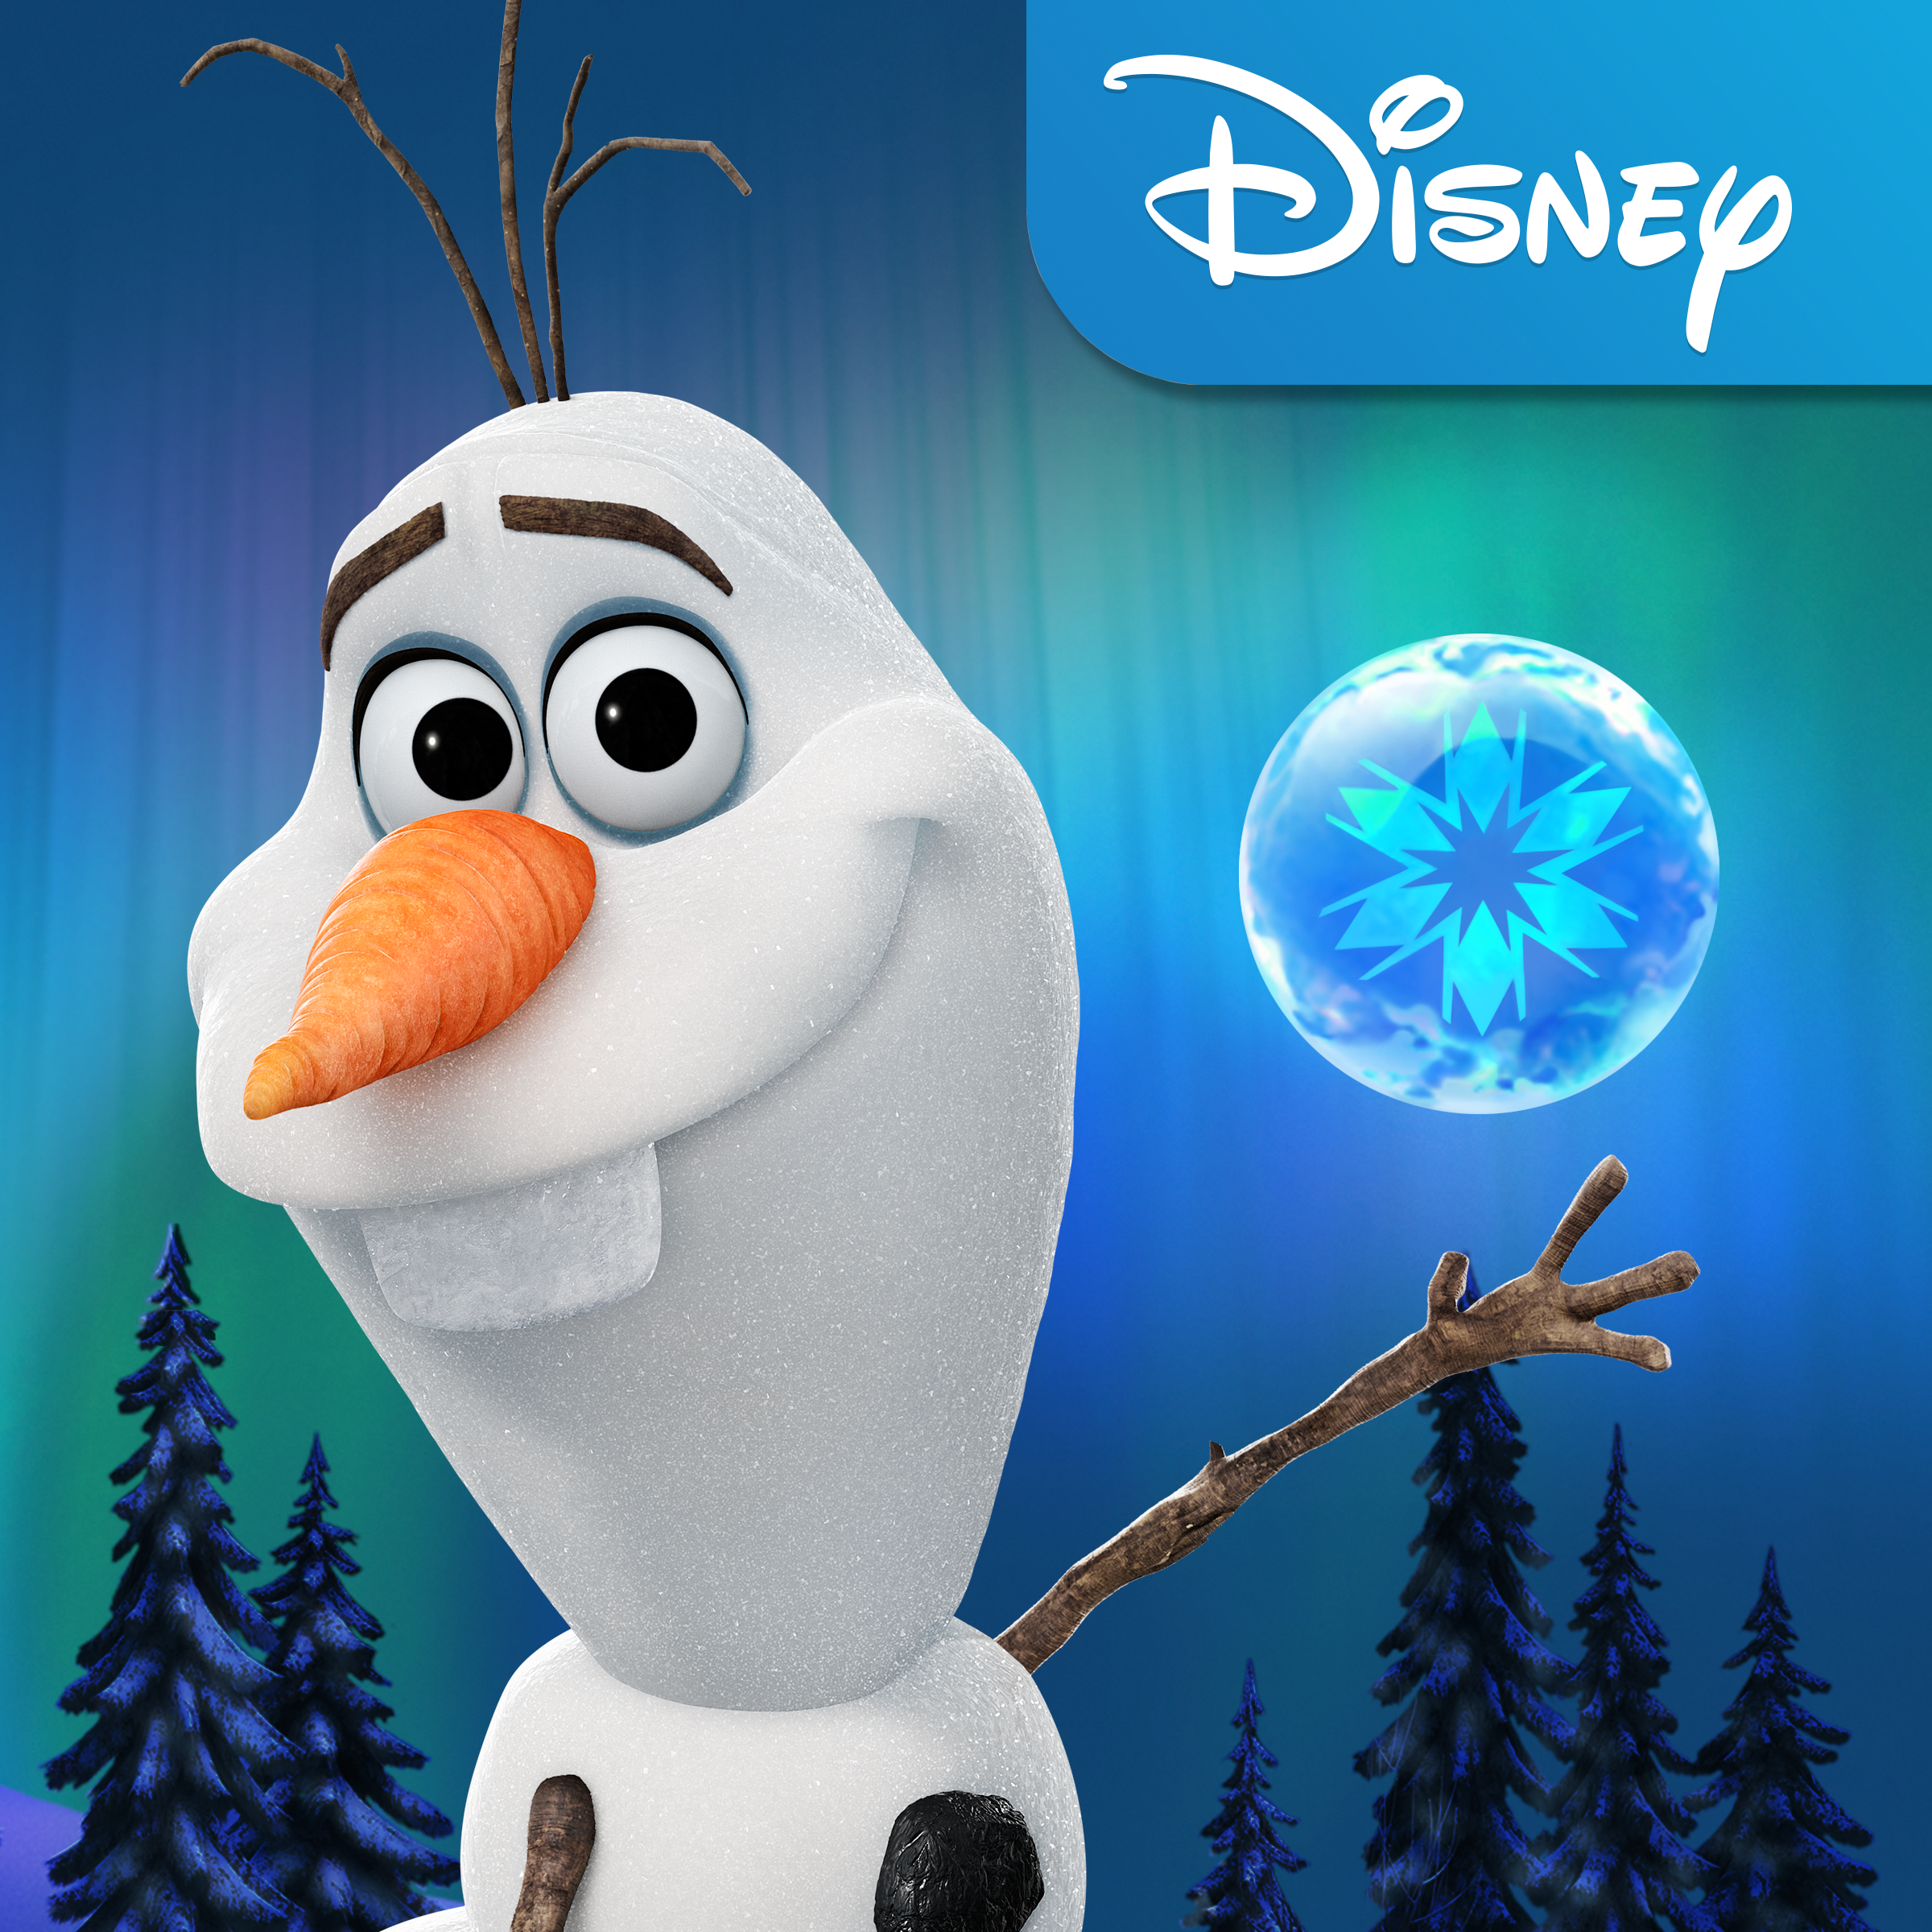 Frozen | Official Disney Site